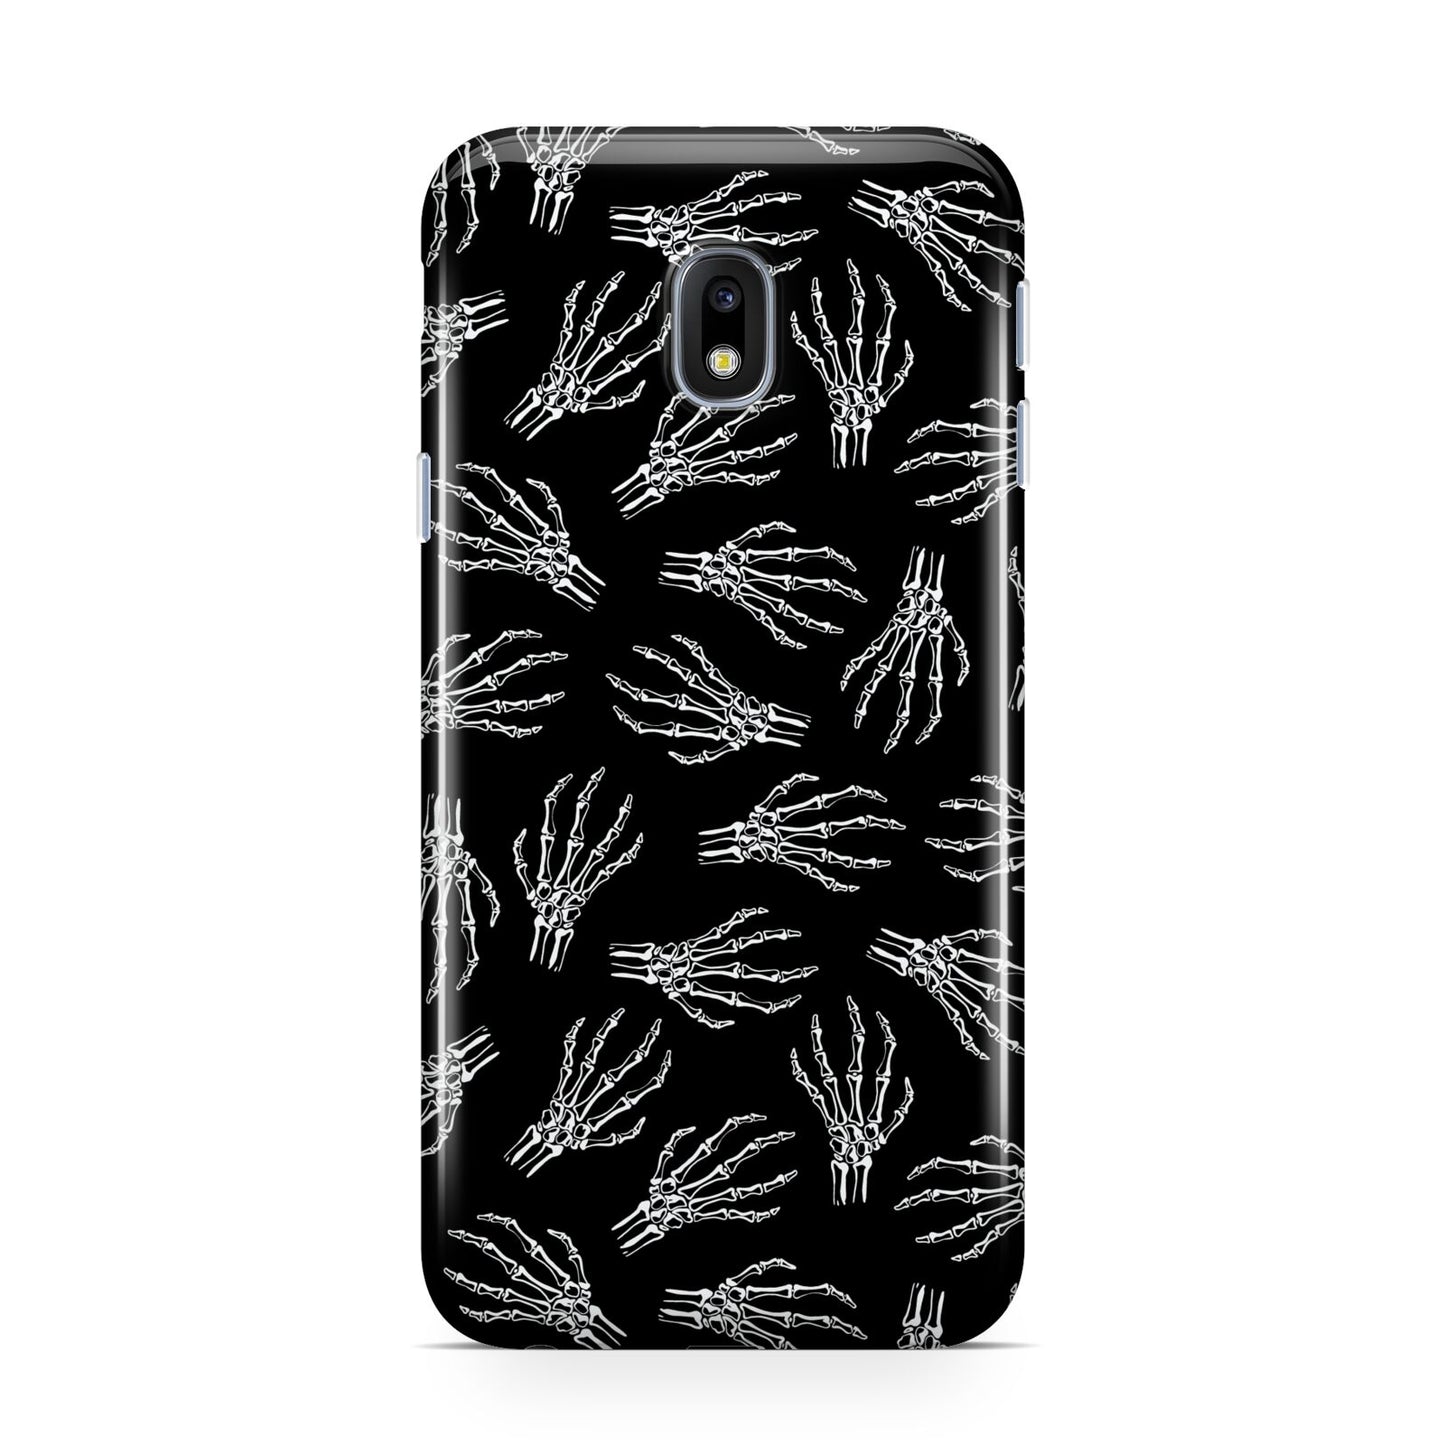 Skeleton Hands Samsung Galaxy J3 2017 Case